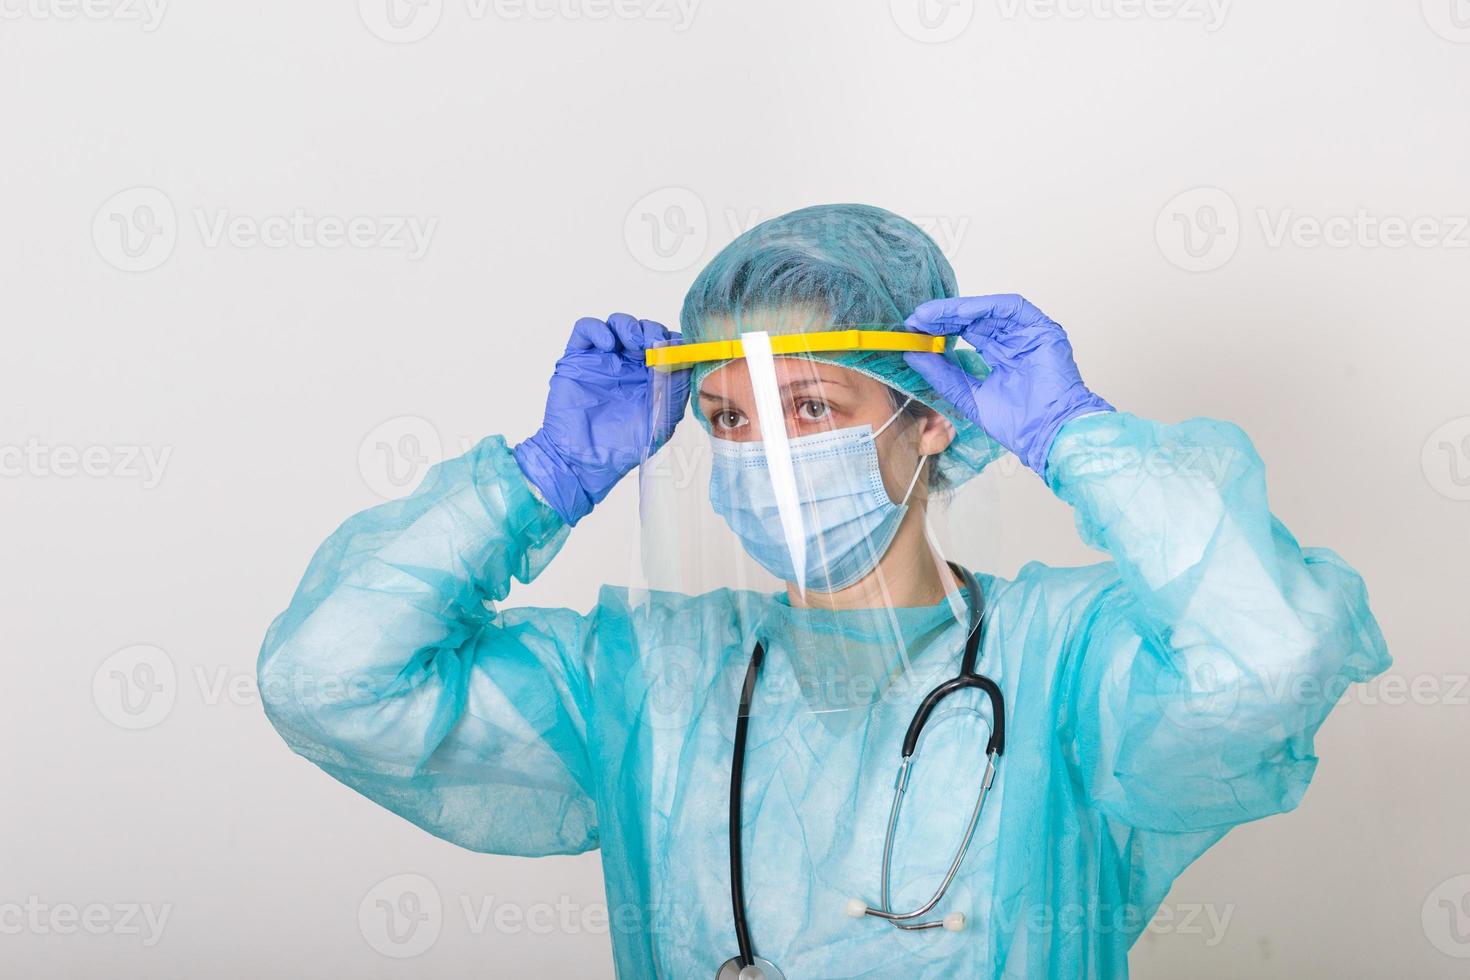 médico enfermeiro vestindo traje de proteção para combater o coronavírus covid 19 com surto de coronavírus de fundo branco ou covid-19, conceito de quarentena covid-19 foto